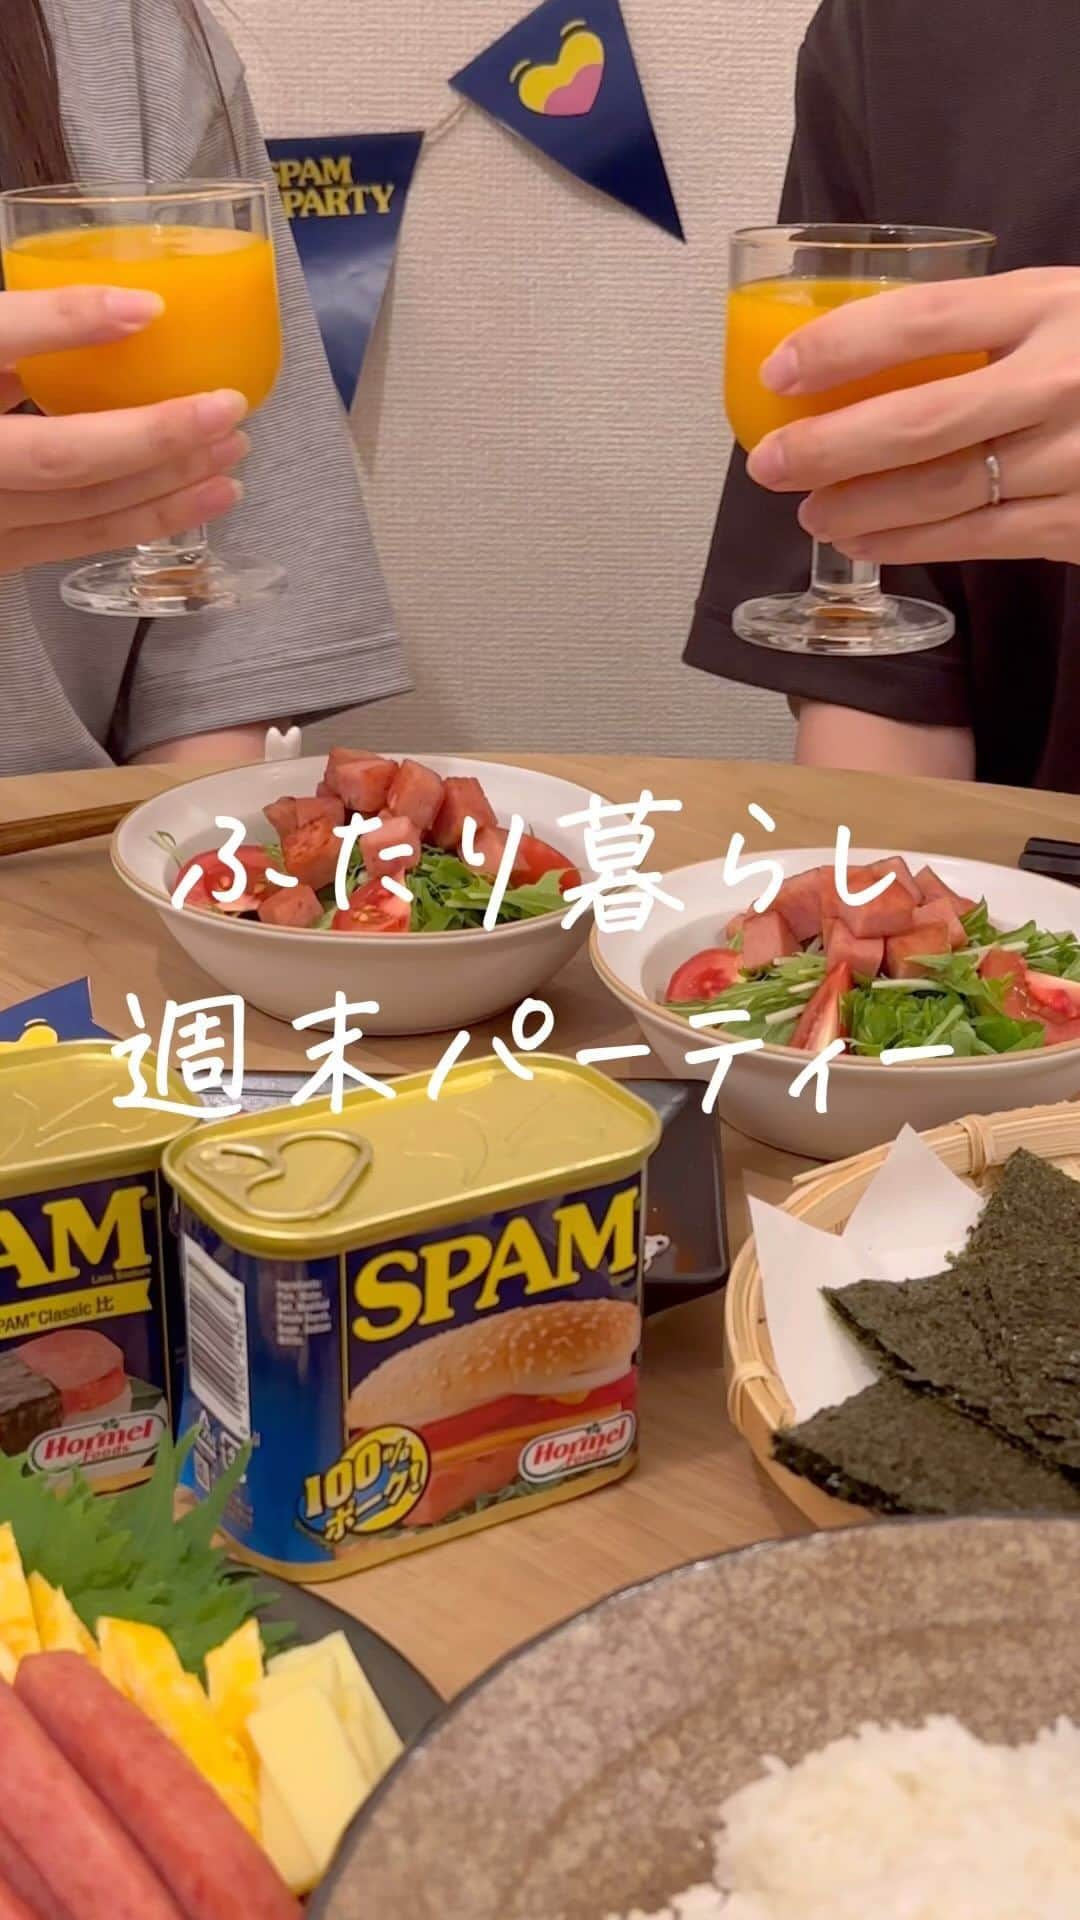 あやうやのインスタグラム：「←ほかの投稿も見てみる  この前の週末パーティーの様子をちらり💫  明日からまた1週間が始まる〜ということで、 日曜の夜にSPAM® 商品でパーティーしたよ🫰🏻  夫がSPAM® Brandが大好きだから手巻きおにぎりとサラダでアレンジしてみた☺️ 喜んでもらえて嬉しかったな〜  SPAM® Brand Japan 公式 Instagramでキャンペーンにも参加してみてね！  #スパムがあればパーティーだ Instagramのキャンペーンが8/10から開催  ①Instagram公式アカウント@spamjapanをフォロー ② #スパムがあればパーティーだ @spamjapanを投稿テキストの中に記載し、SPAM® 商品を 使った料理やパーティーシーンを缶と一緒に投稿！  ——————————  私達のアカウントでは ⚪︎同棲 ⚪︎暮らし について発信しています🕊  フォローしていただけると とても喜びます☺️  ▶▶@aya_uyablog  26歳カップル ☞夫婦になりました💍 1LDK/5階建  -—————————— #暮らし #同棲 #同棲生活 #結婚生活 #新婚生活 #ふたり暮らし #二人暮らし #社会人 #夜ごは ん #スパムがあればパーティーだ #スパム #スパムレシピ @spamjapan」